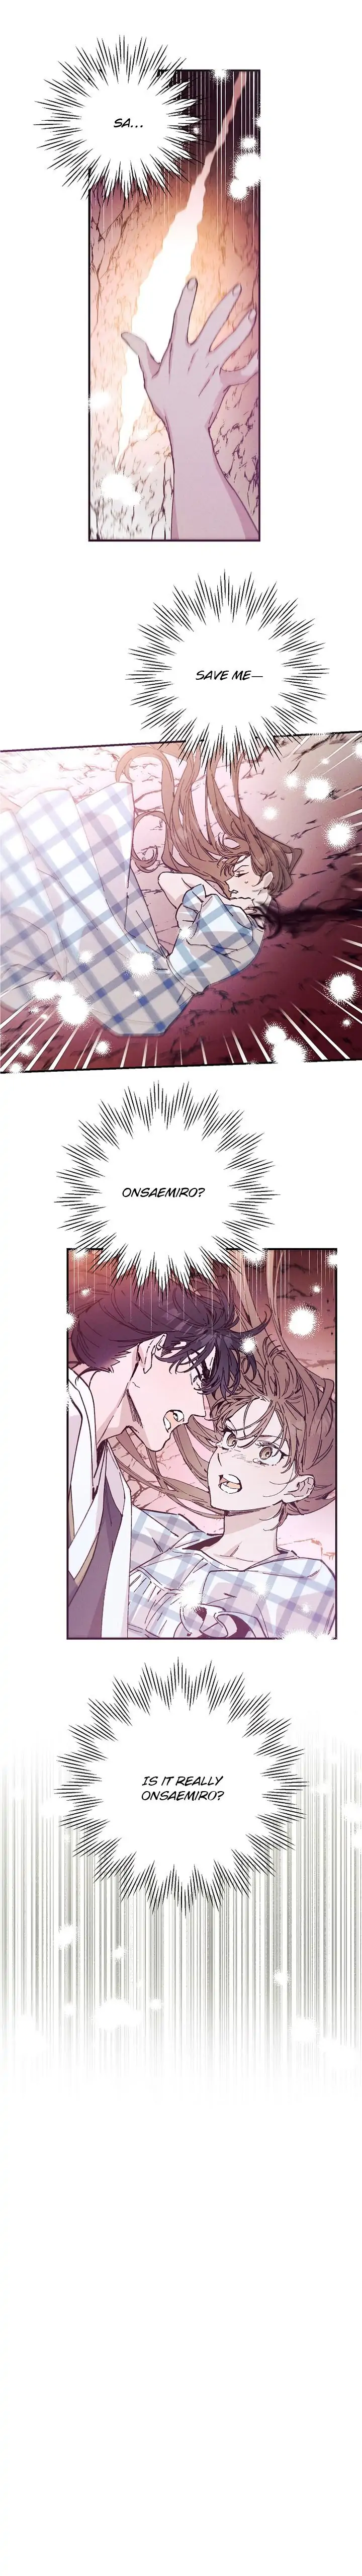 Onsaemiro - Chapter 49 Page 2